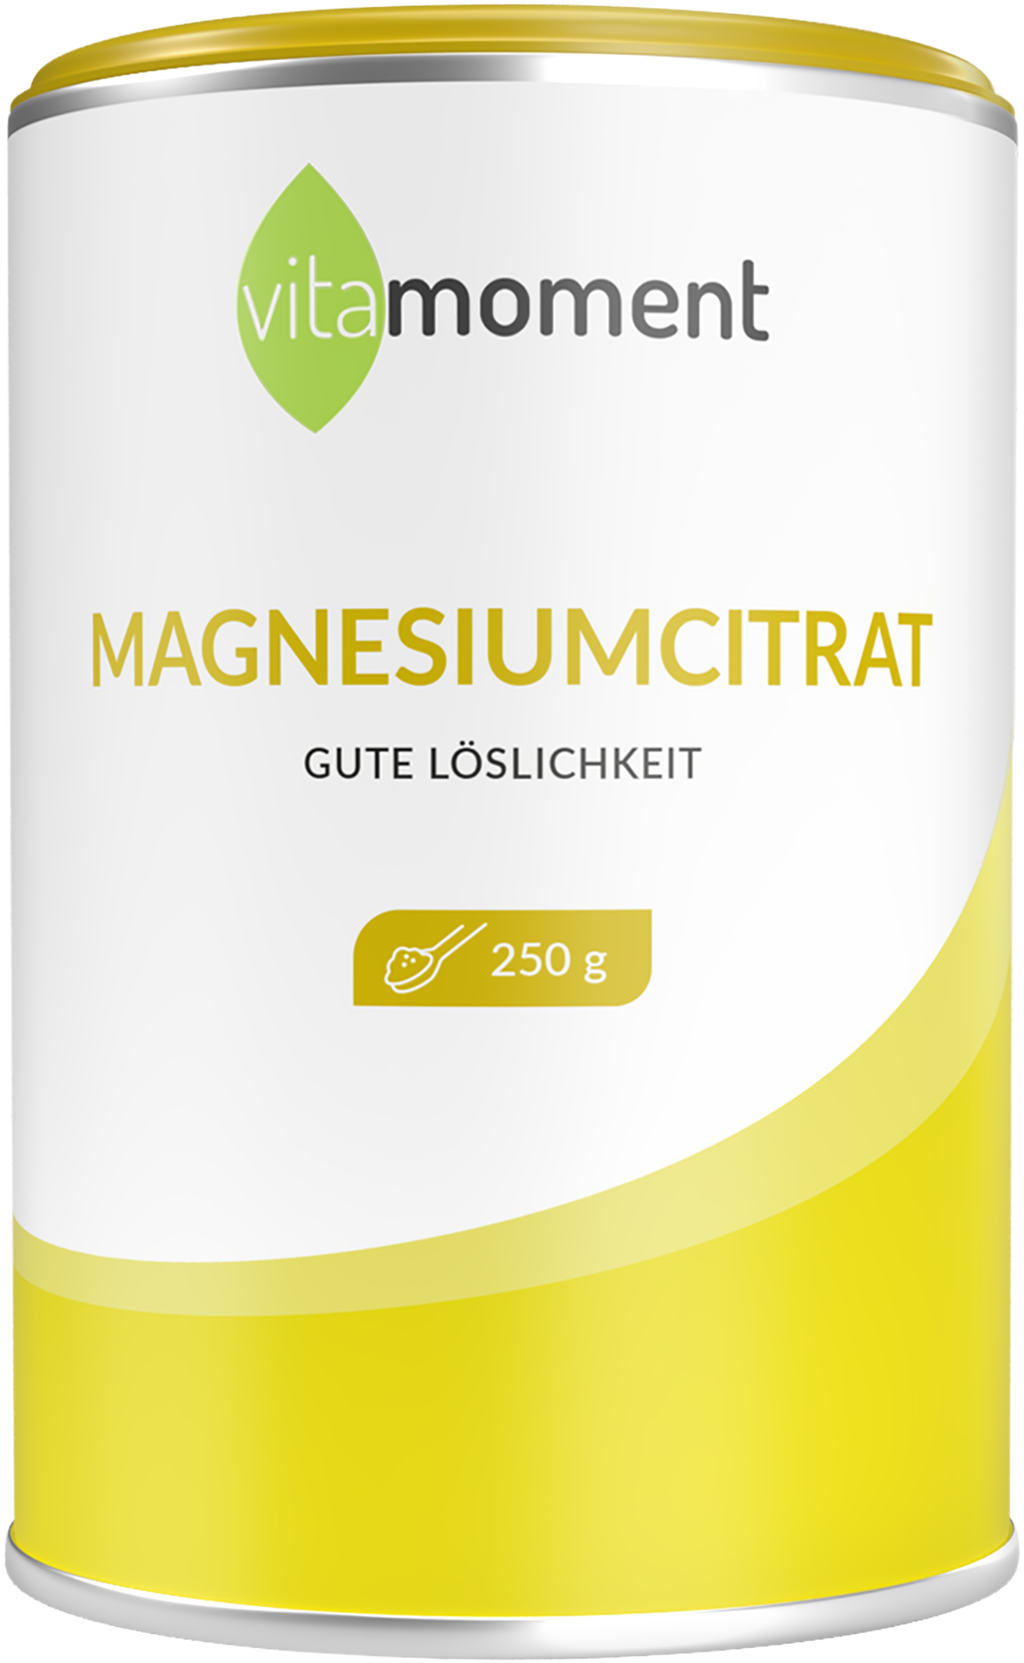 Magnesiumcitrat ✓ Pulver kaufen (250 g)